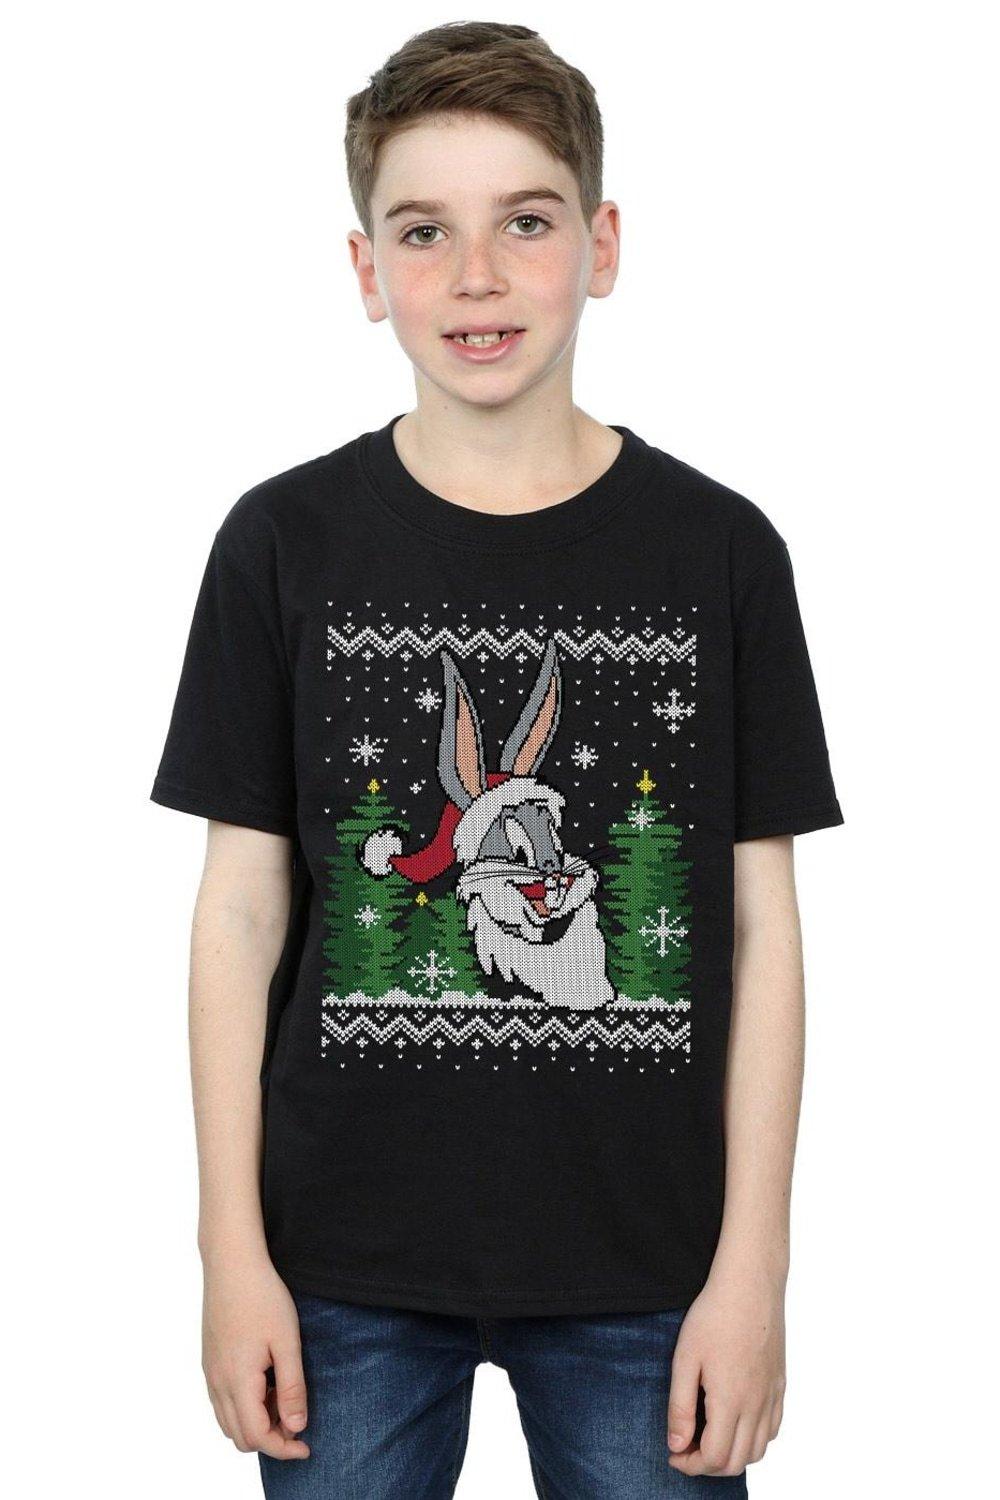 Bugs Bunny Christmas Fair Isle T-Shirt